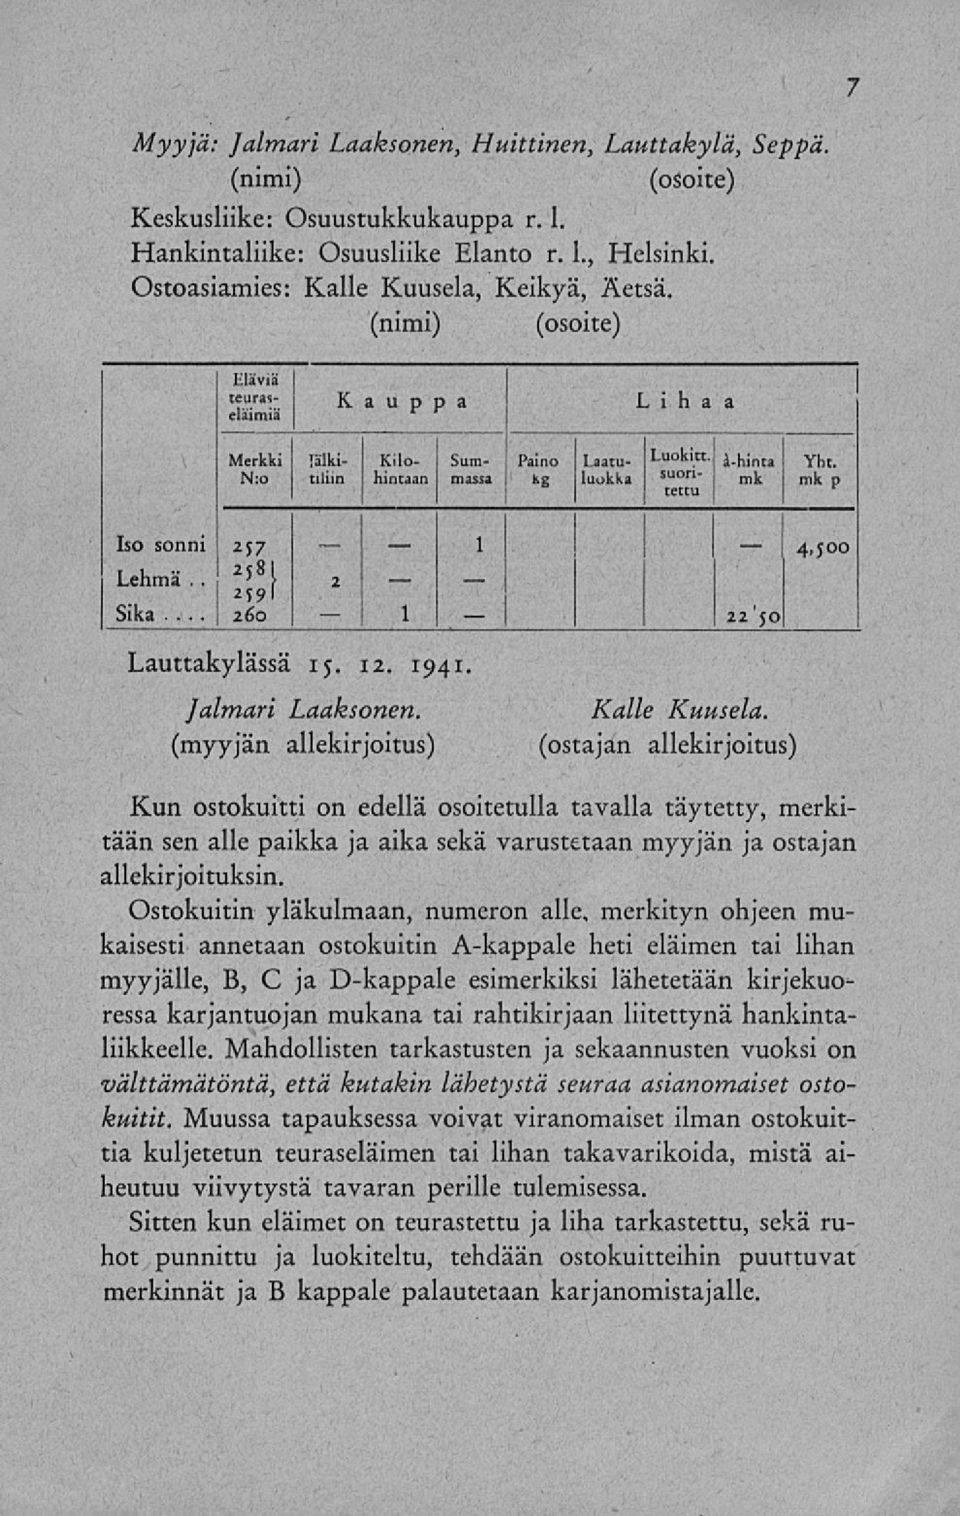 N:o tiliin hintaan massa suon- kg luokka hinta Yhti mk p Iso sonni 257 2 Lehmä.. 5 8 1 2 Sika... 22'50 4>s Lauttakylässä 15. 12. 1941. Jalmari Laaksonen. Kalle Kuusela.